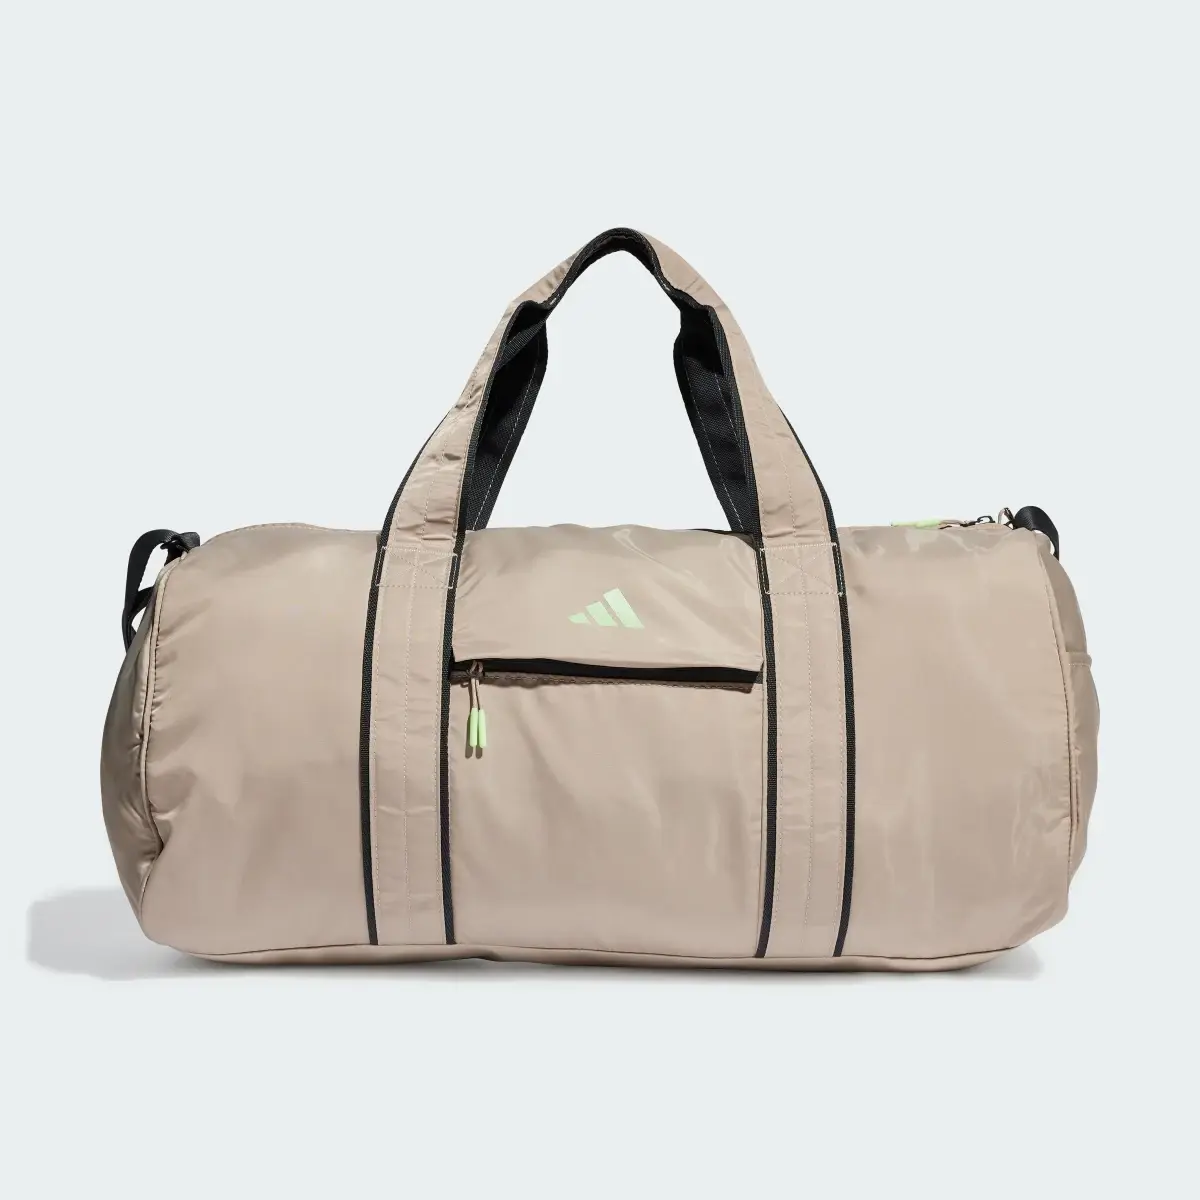 Adidas Yoga Duffel Bag. 2